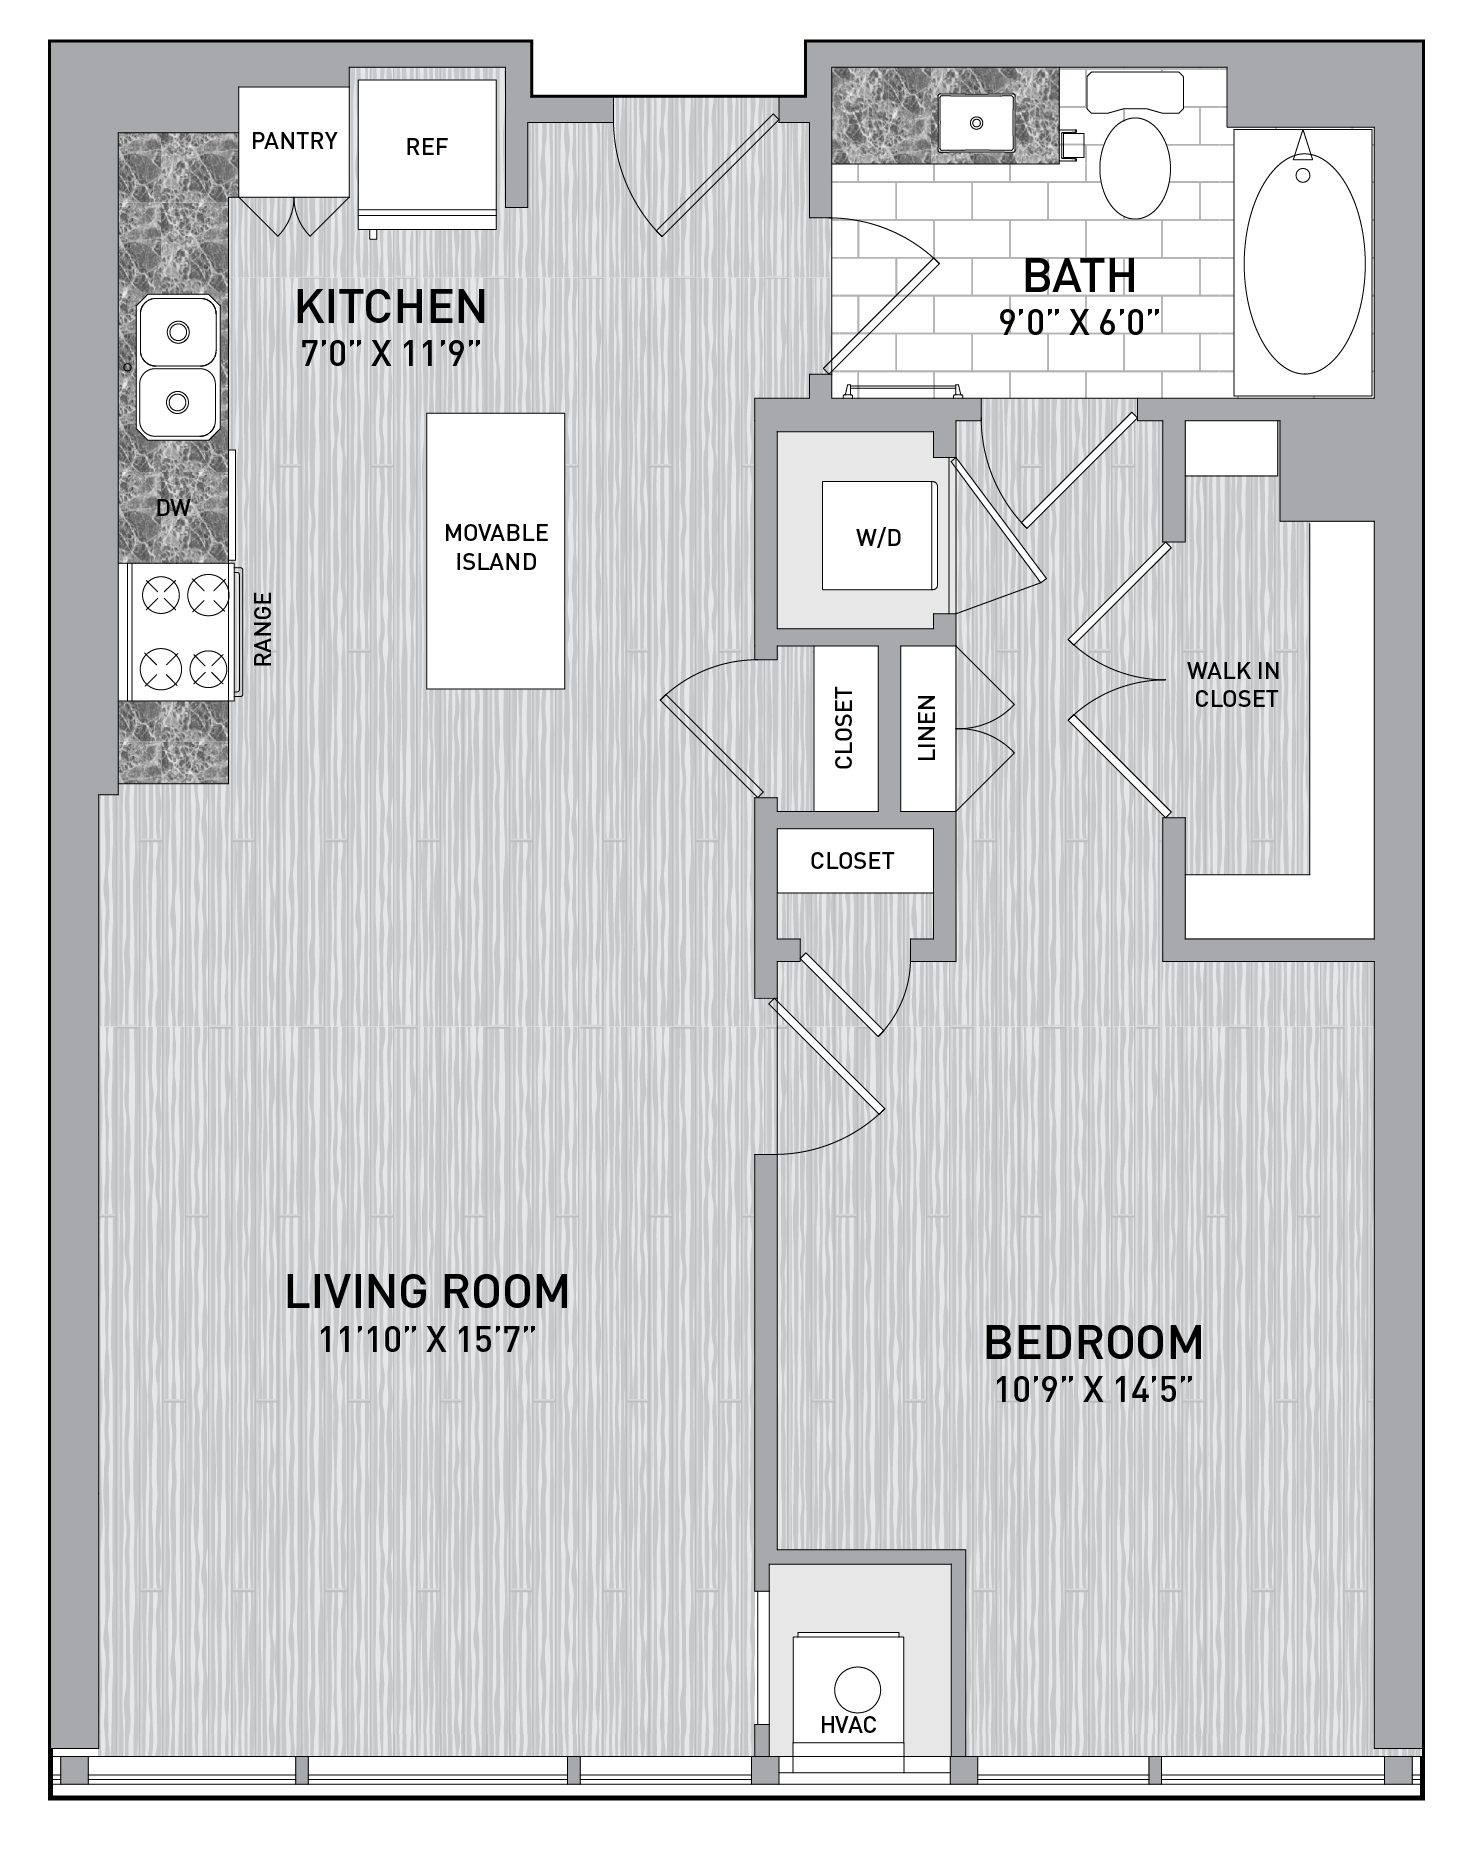 floorplan image of unit id 0316